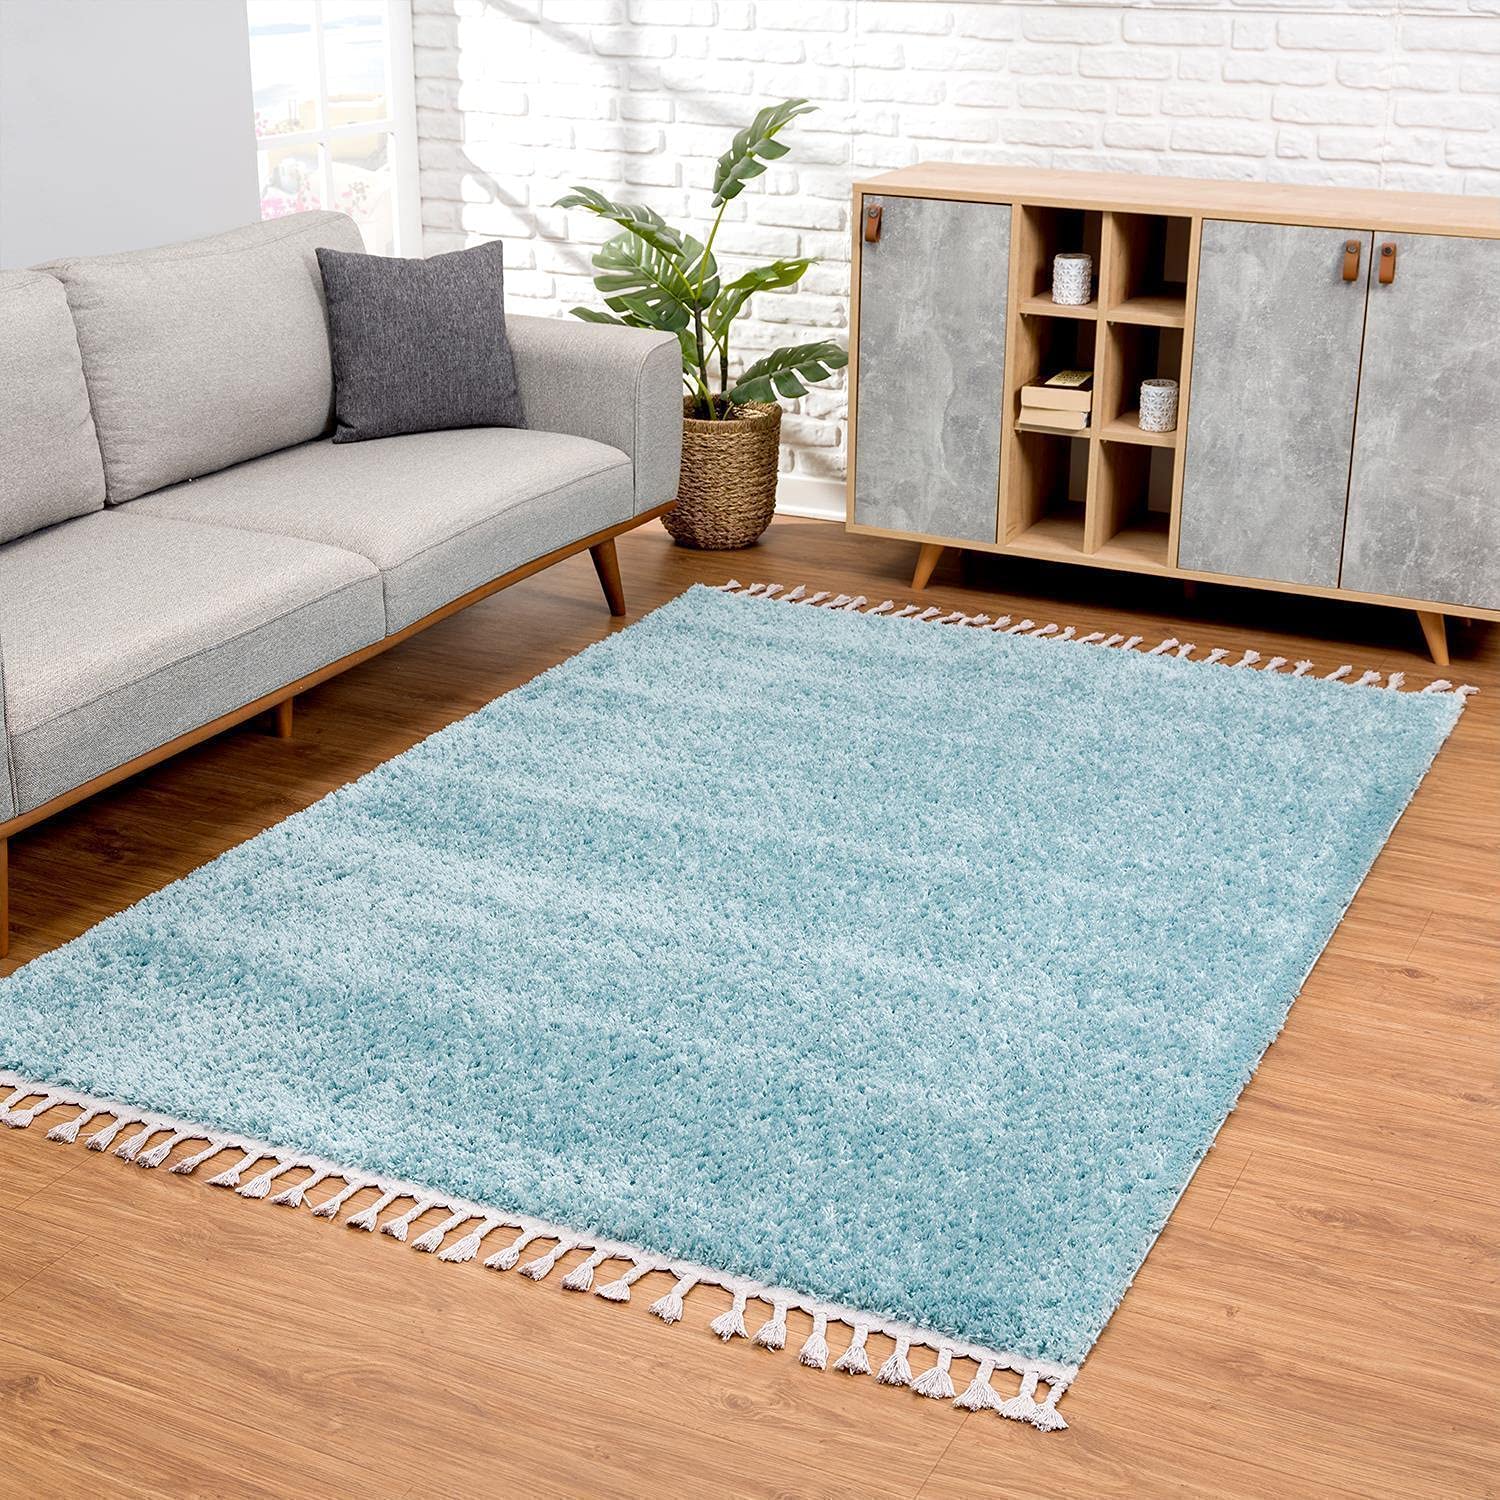 carpet city Teppich Wohnzimmer - Shaggy Hochflor Blau - 140x200 cm Einfarbig - Moderne Teppiche mit Fransen